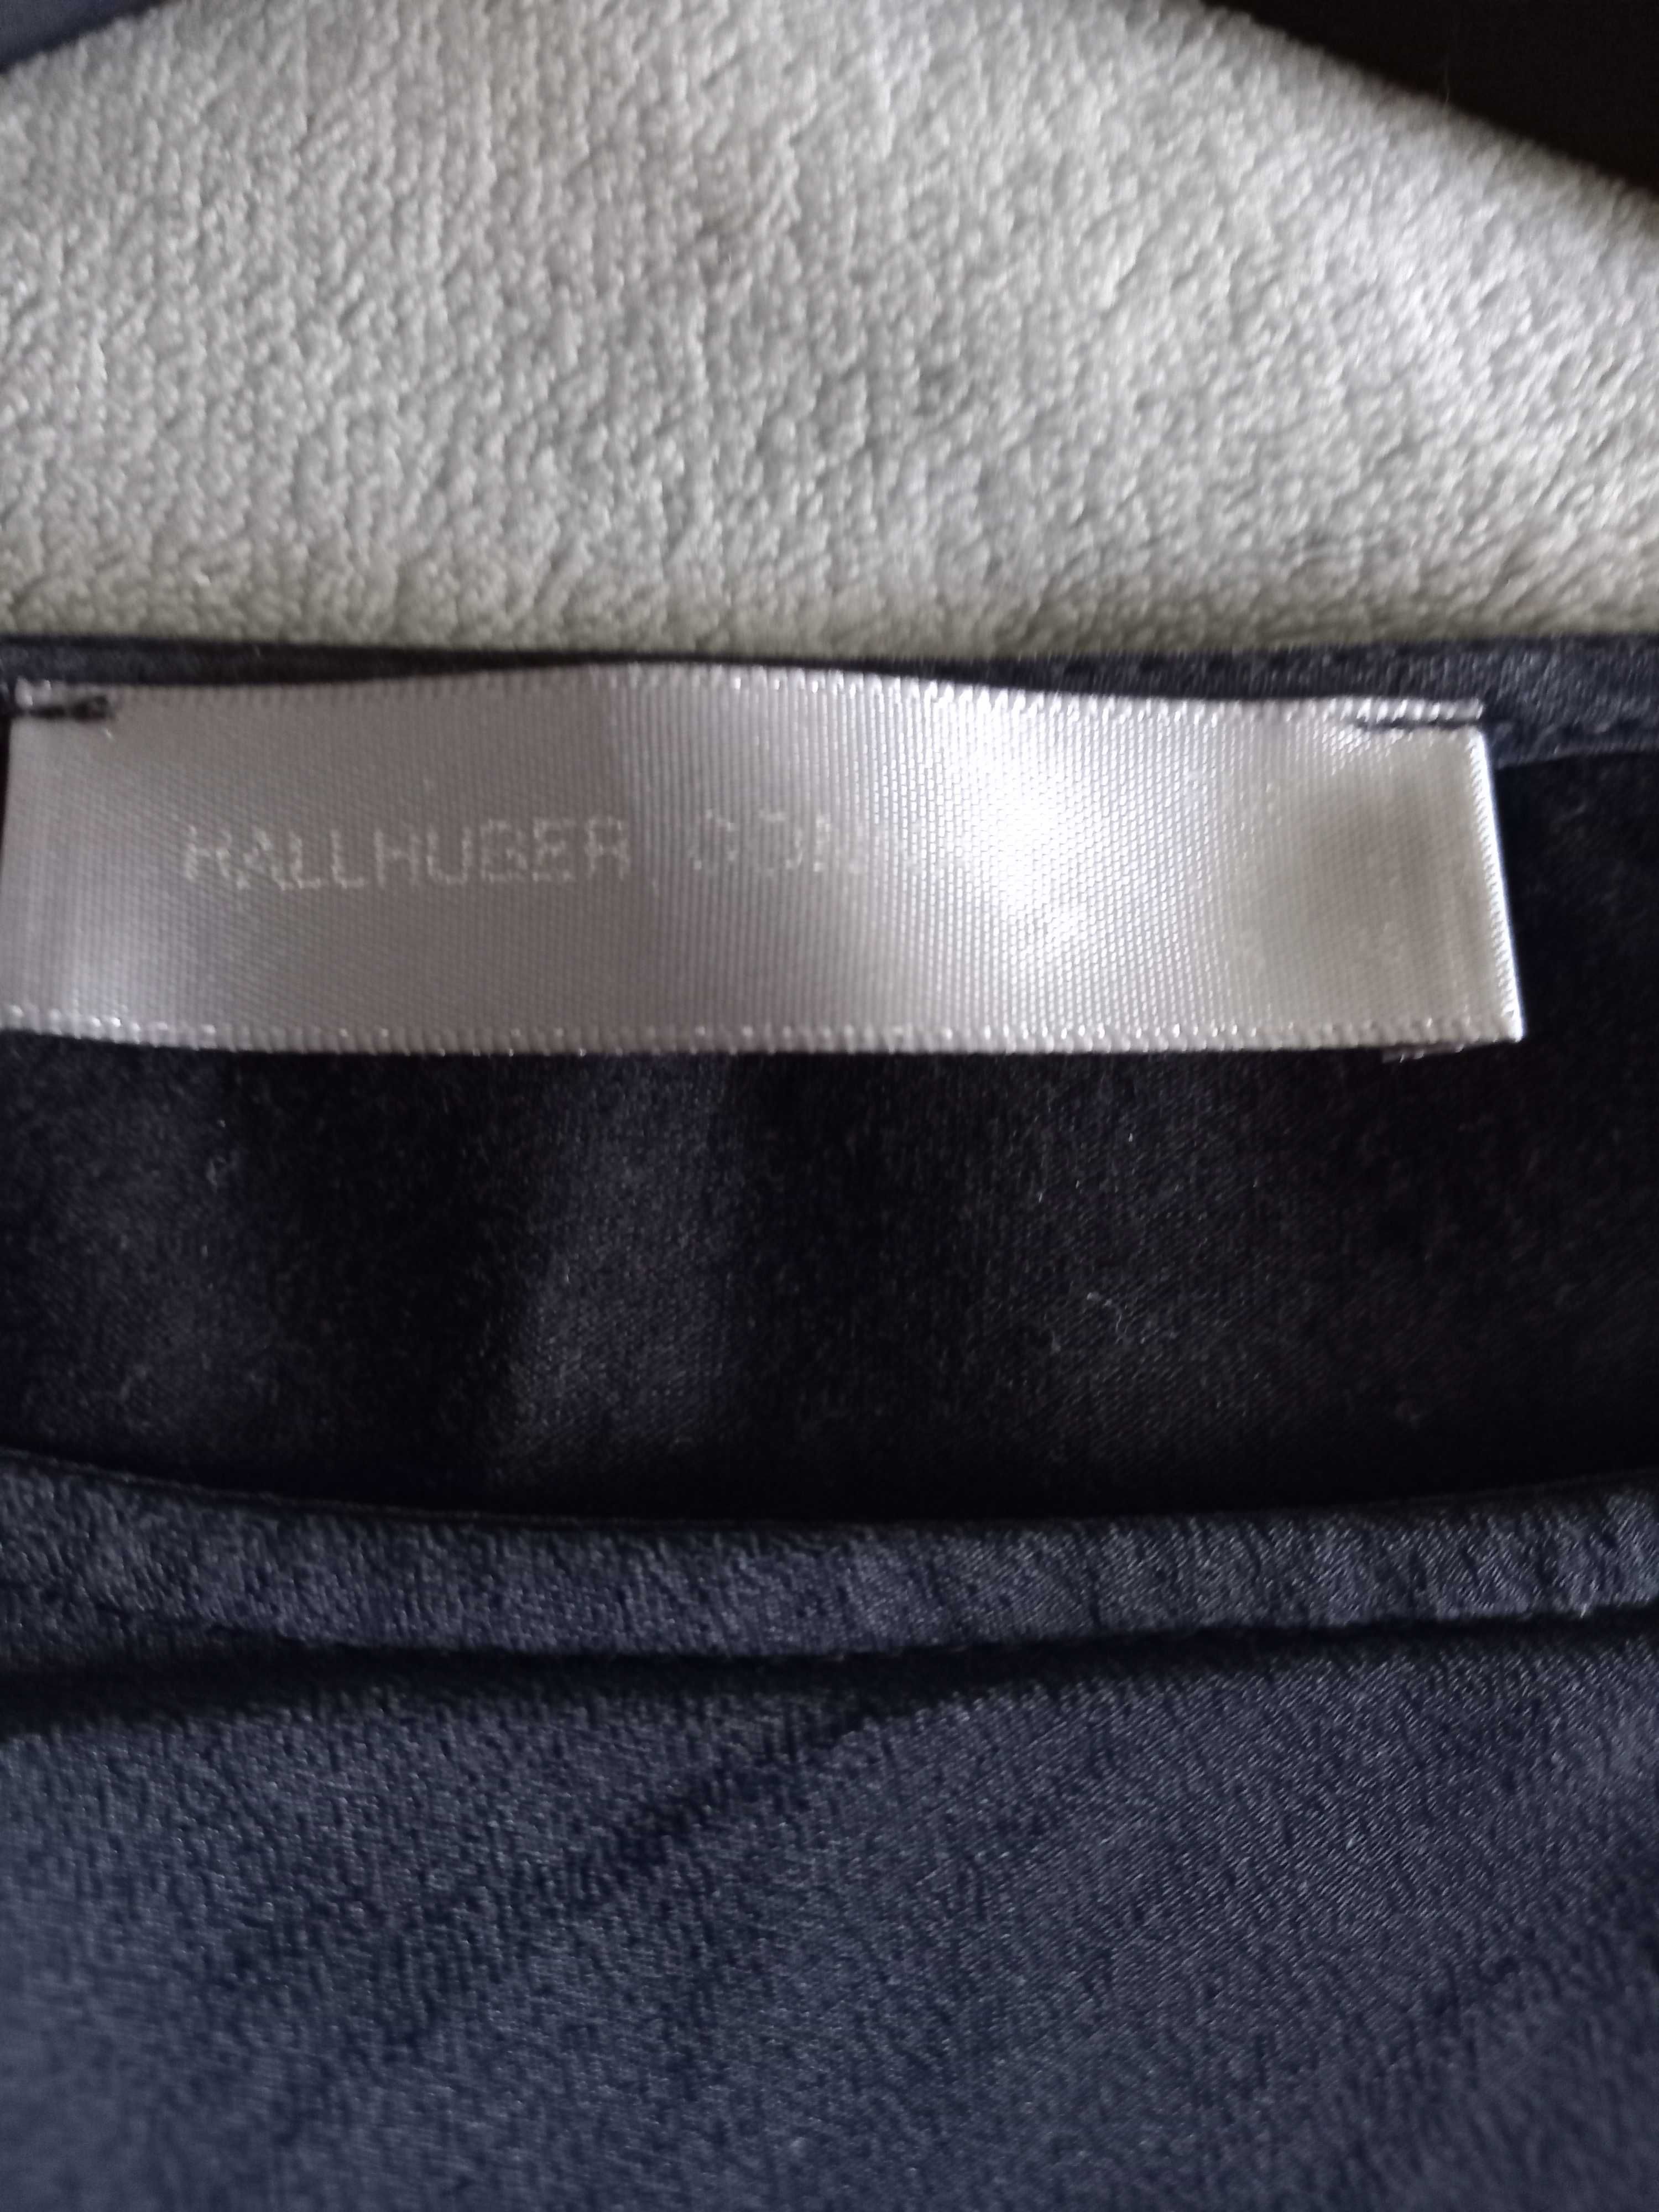 Bluză neagră din mătase Hallhuber, marimea 36